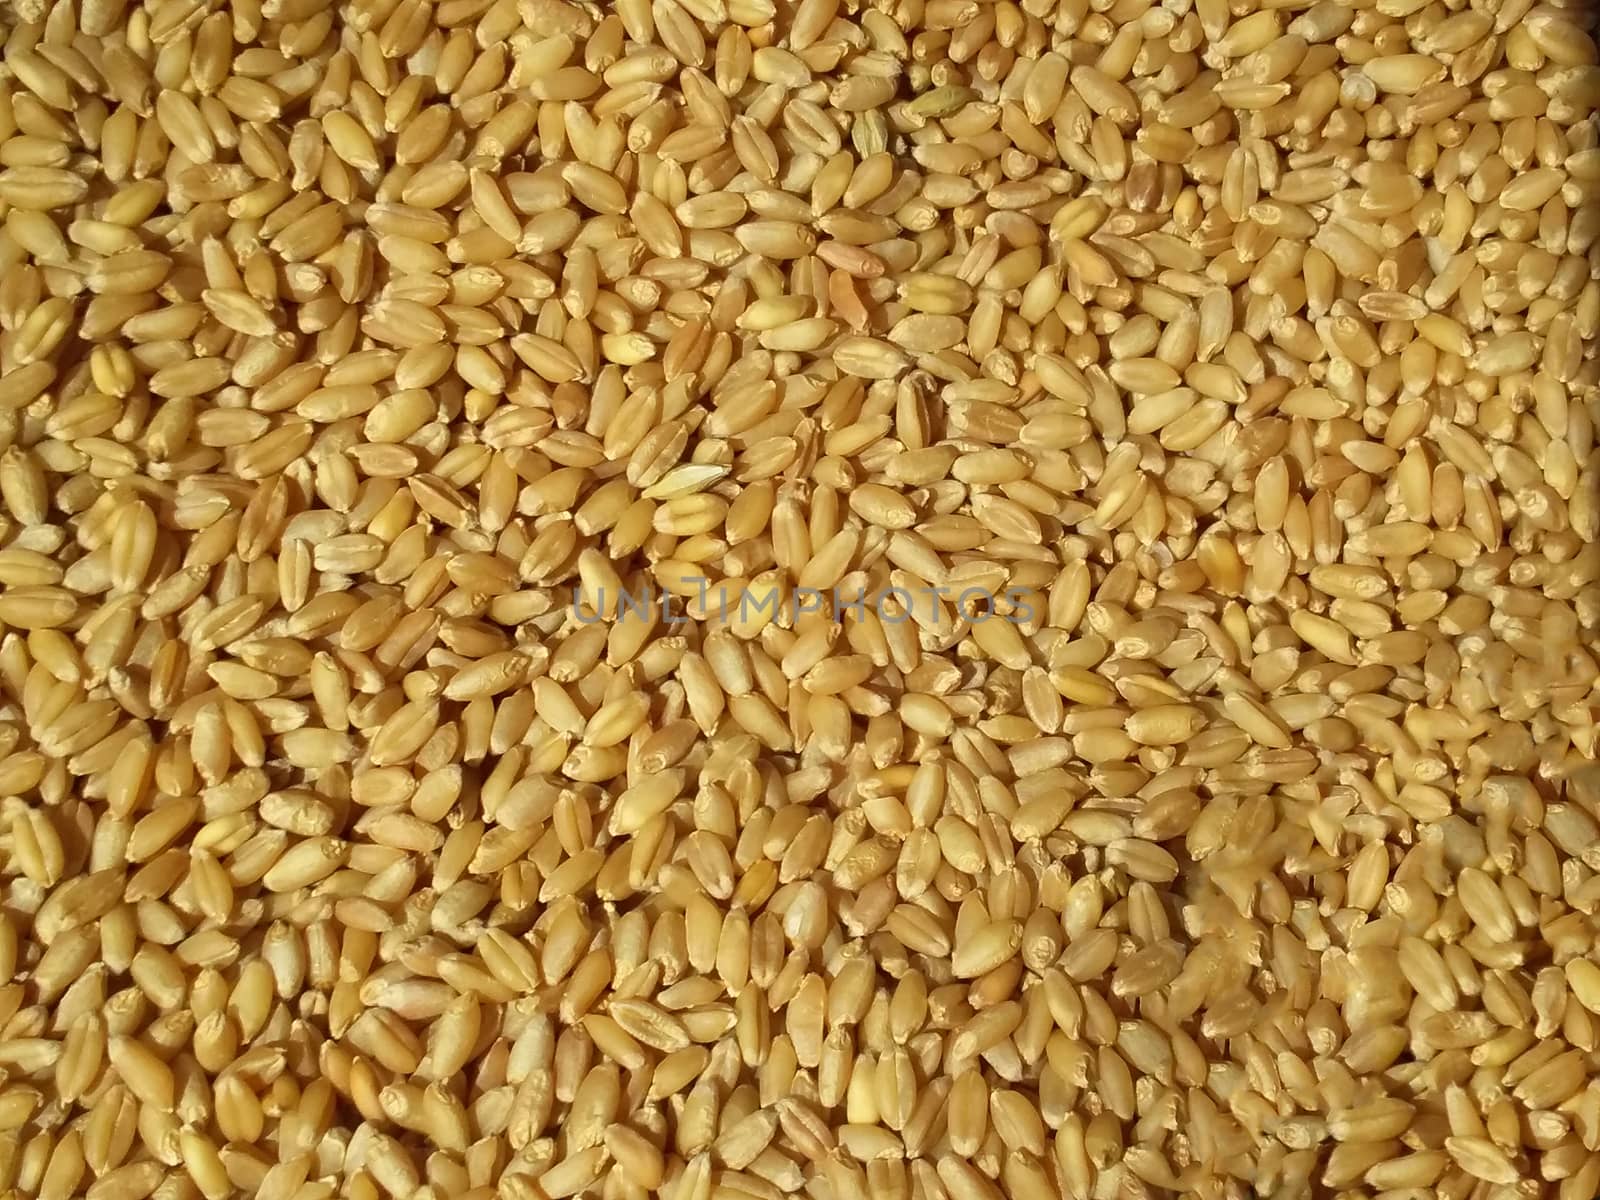 the fresh wheat grain by gswagh71